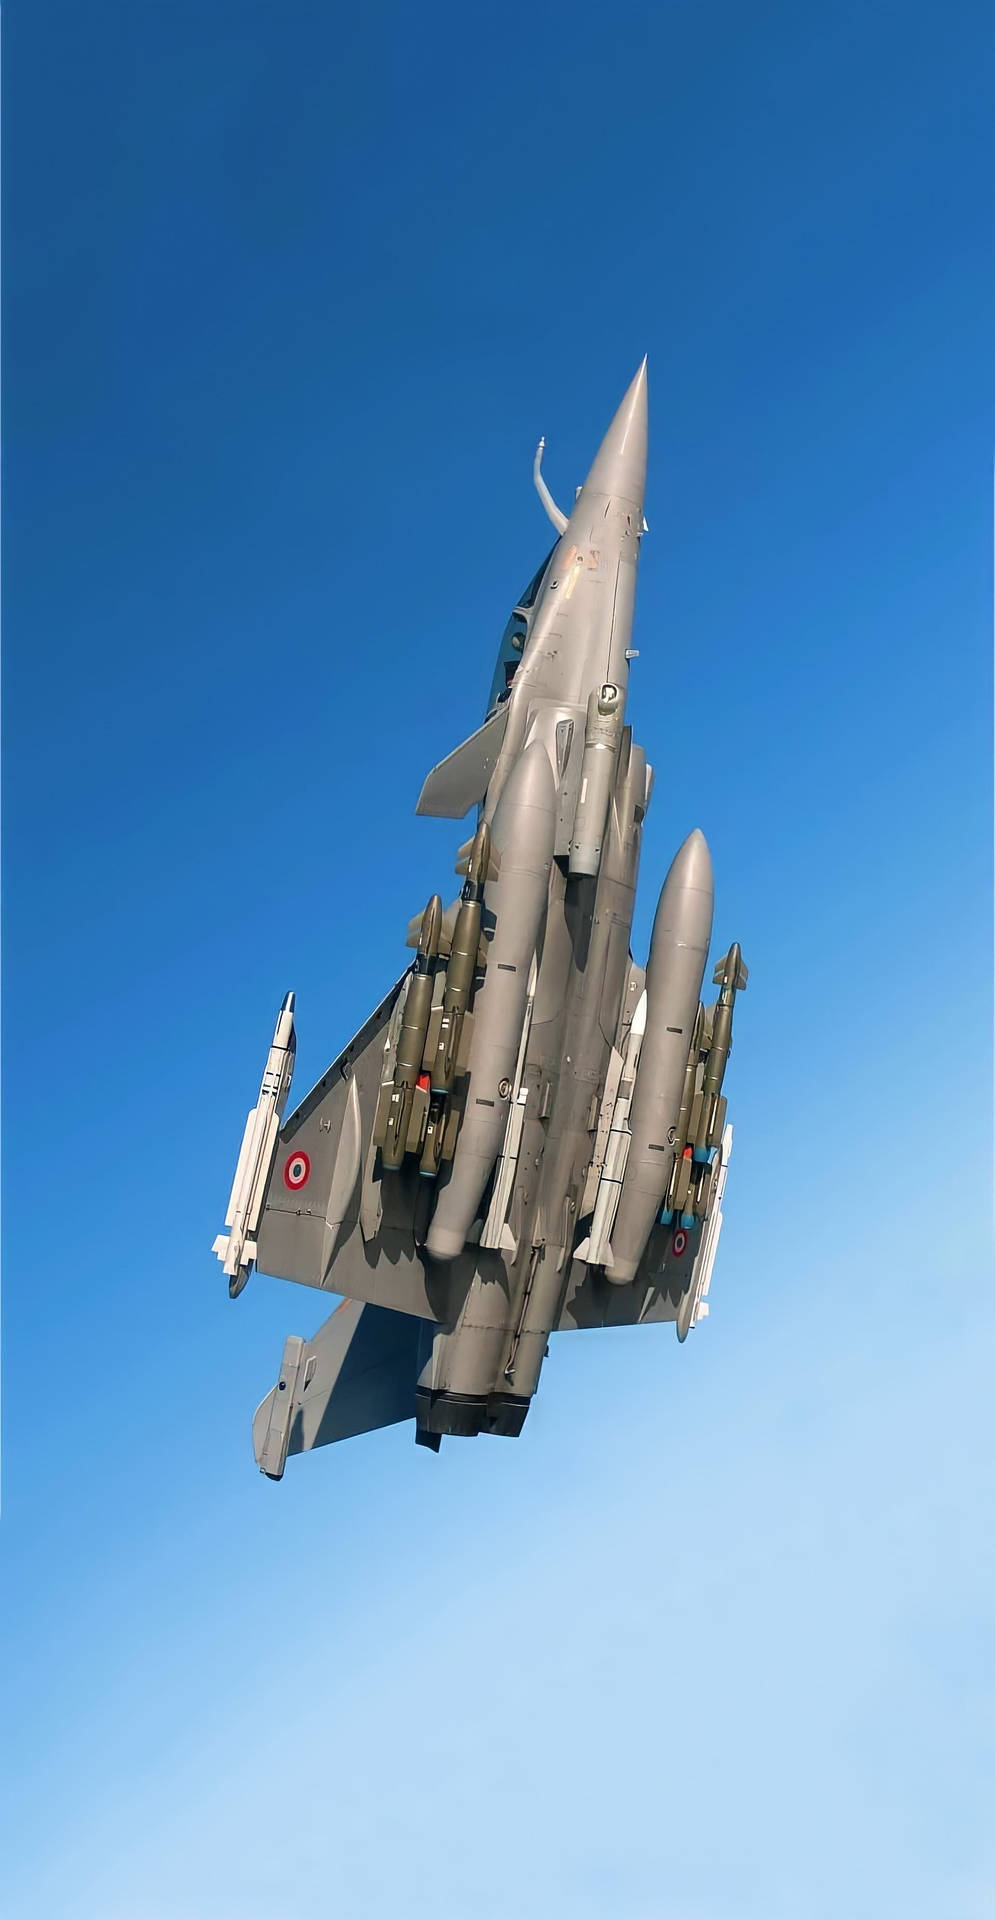 The Dassault Rafale Jet Fighter Background